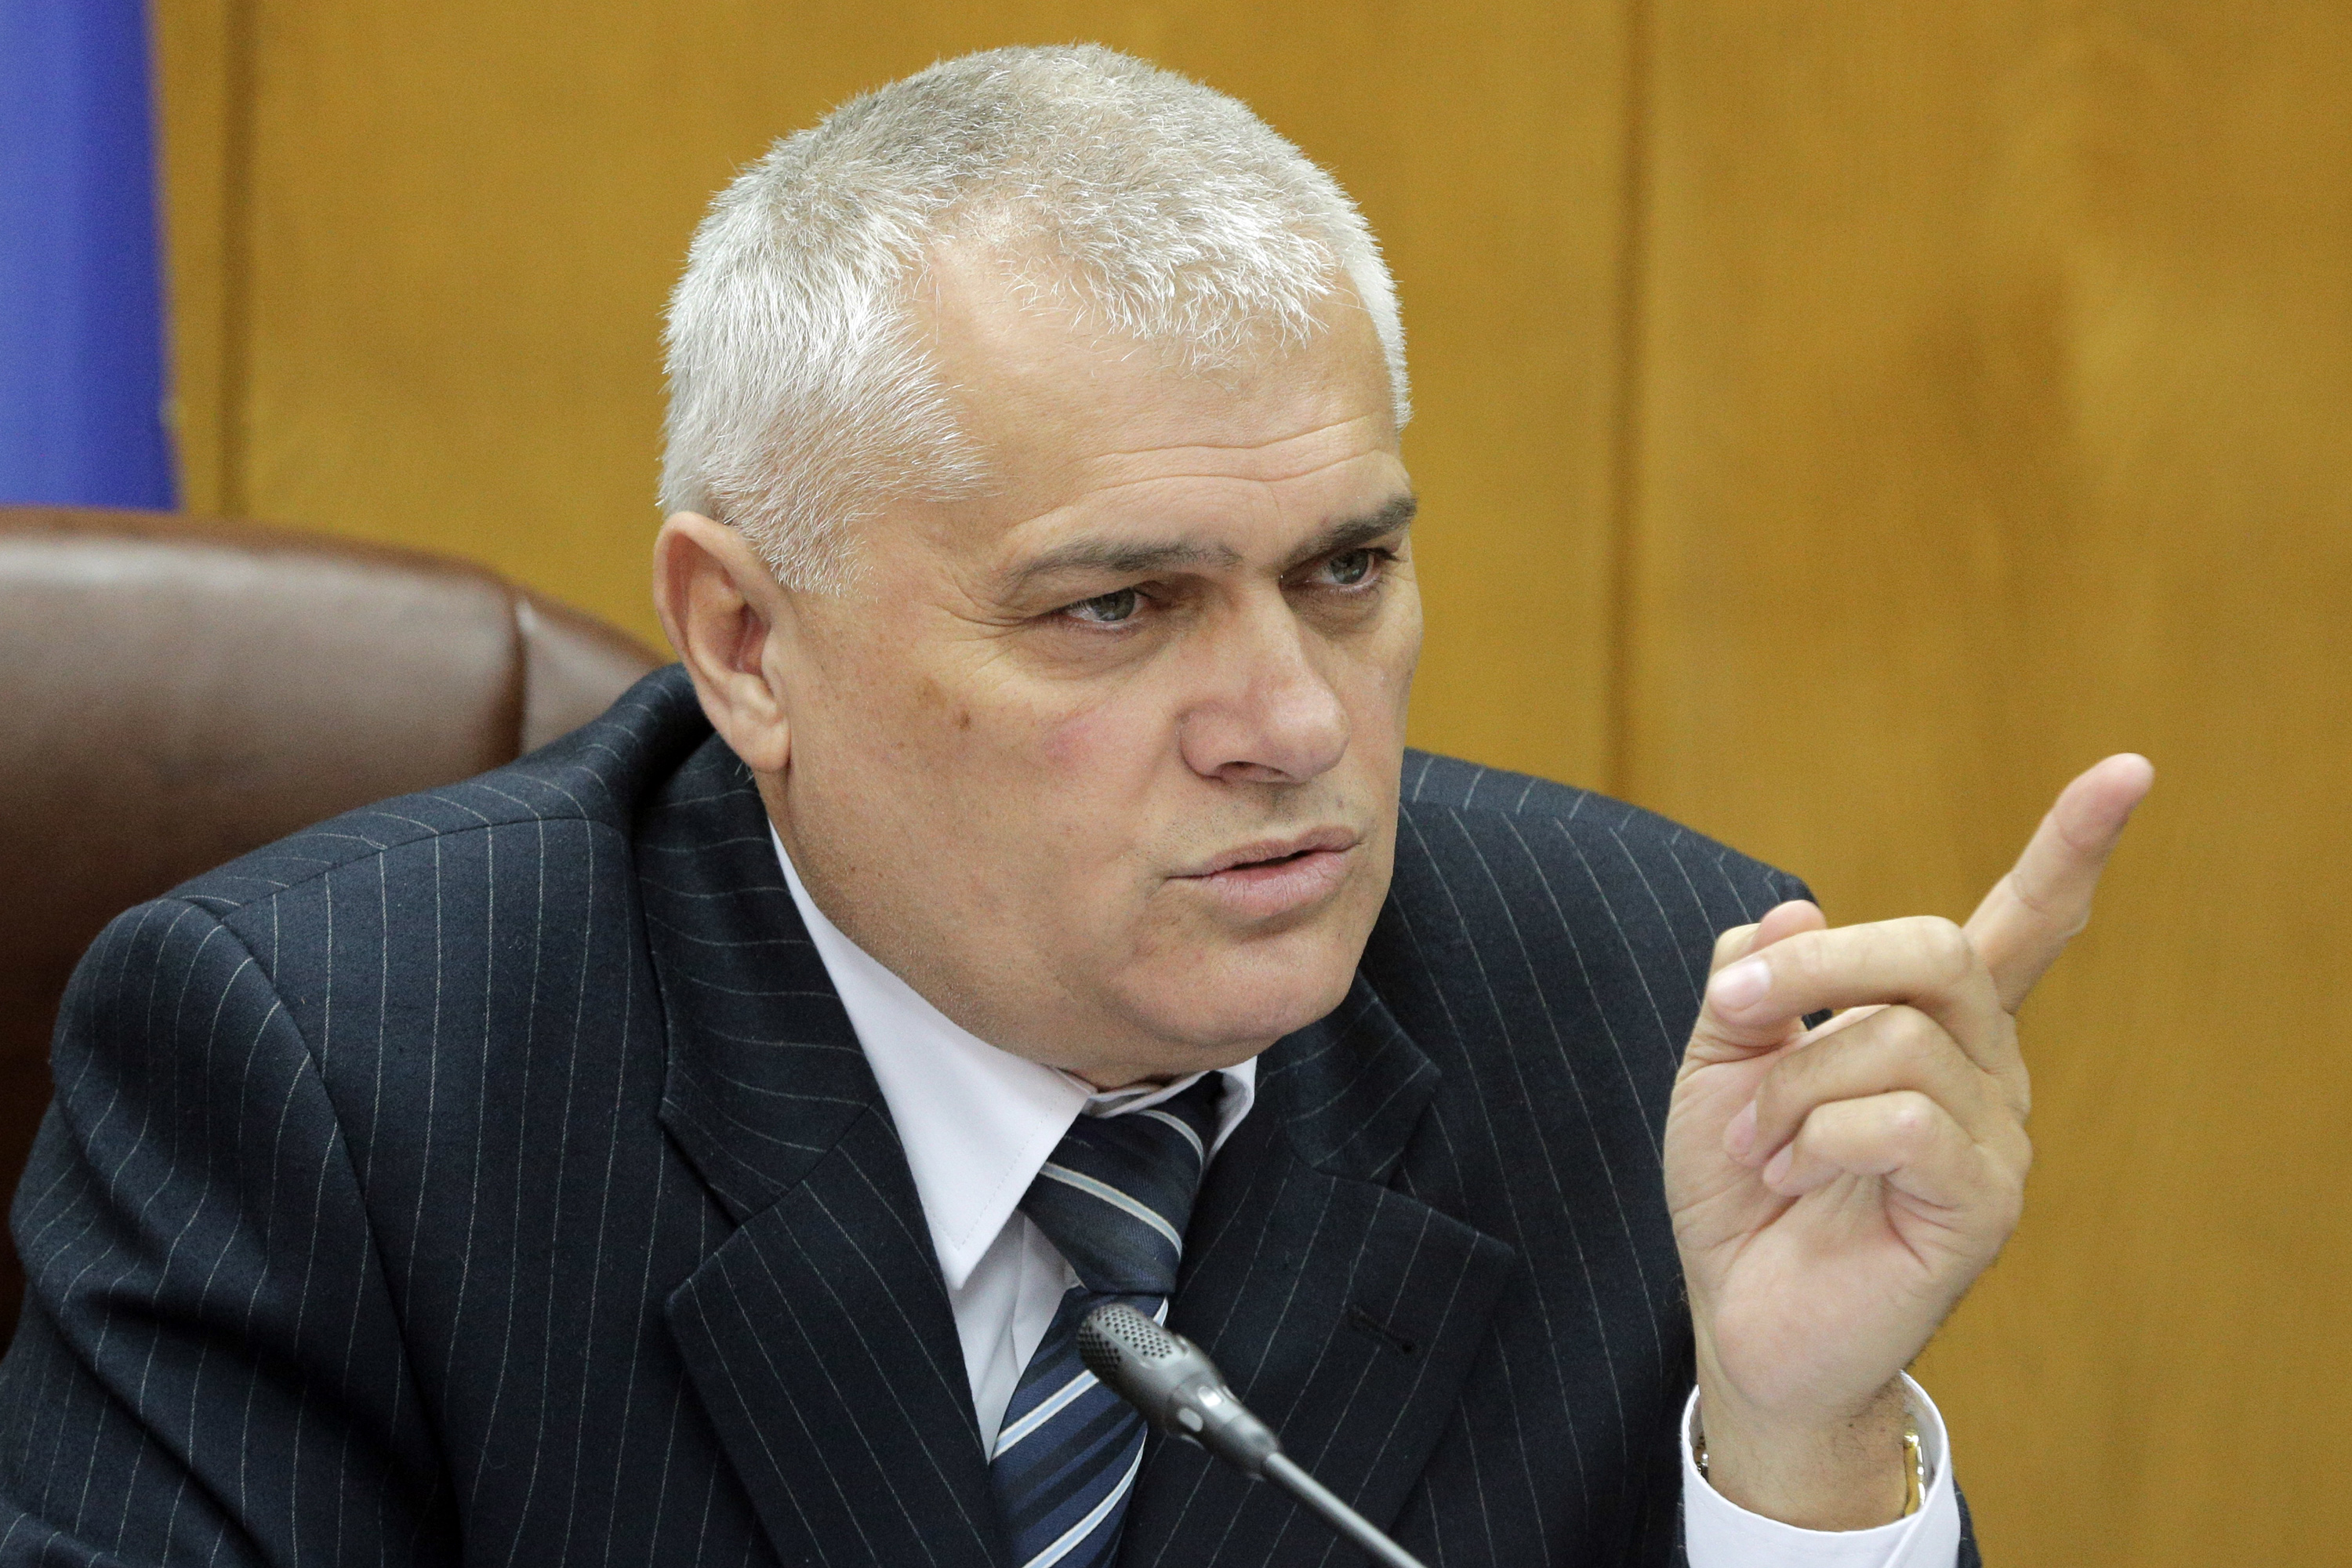 Само 2% от анкетираните искат пълно преформатиране на МВР, каза министър Валентин Радев